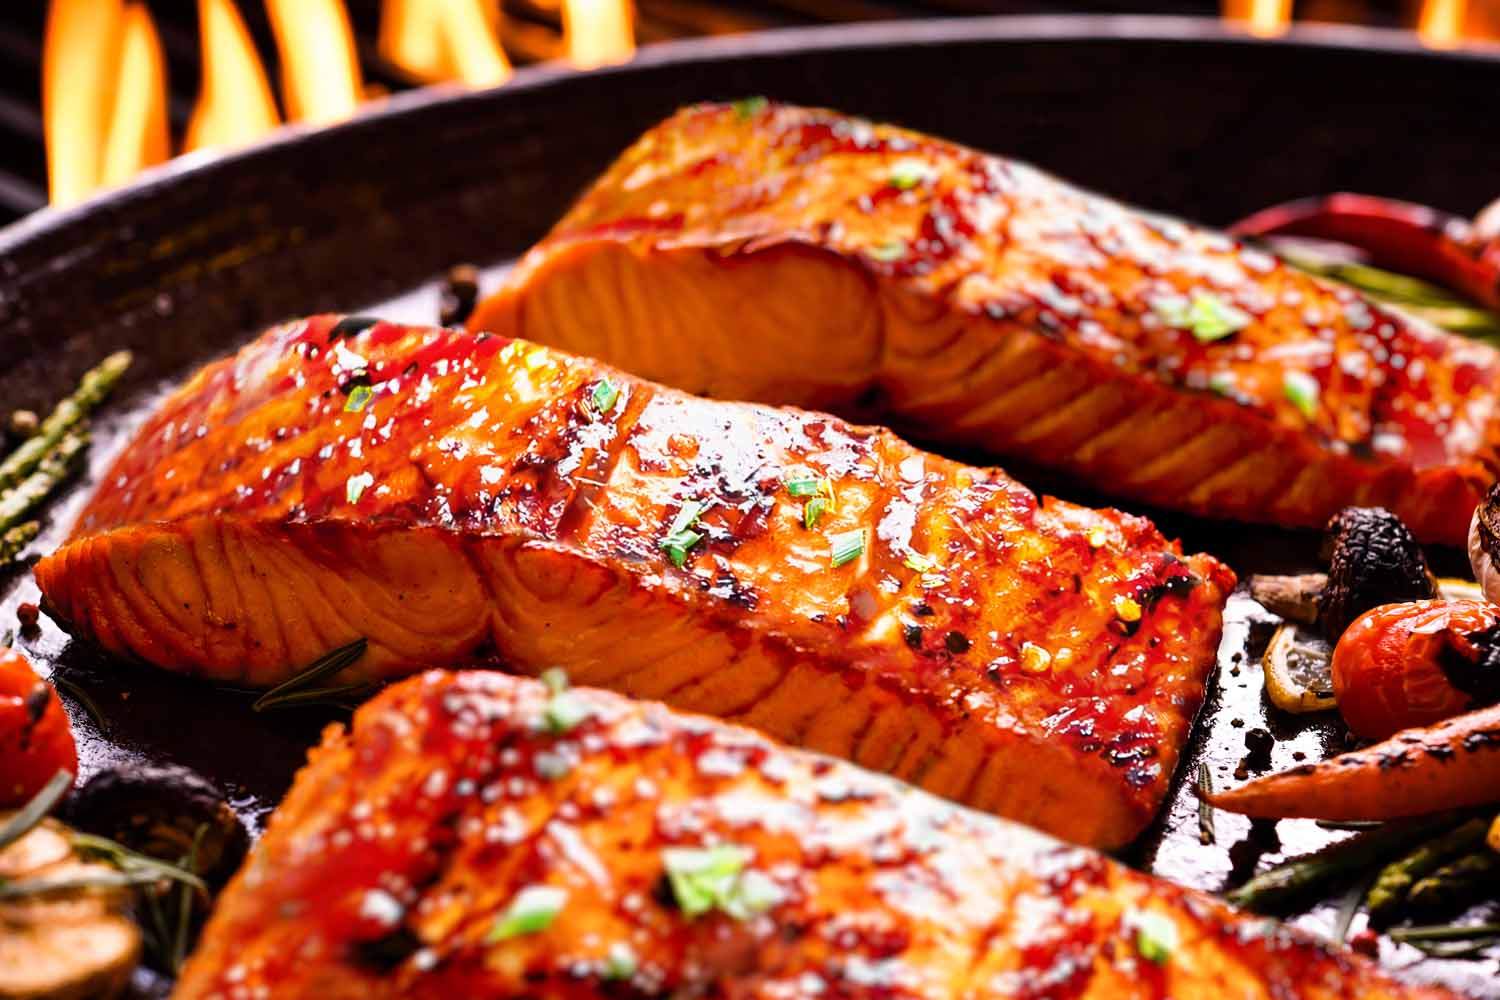 Firecracker Roasted Salmon